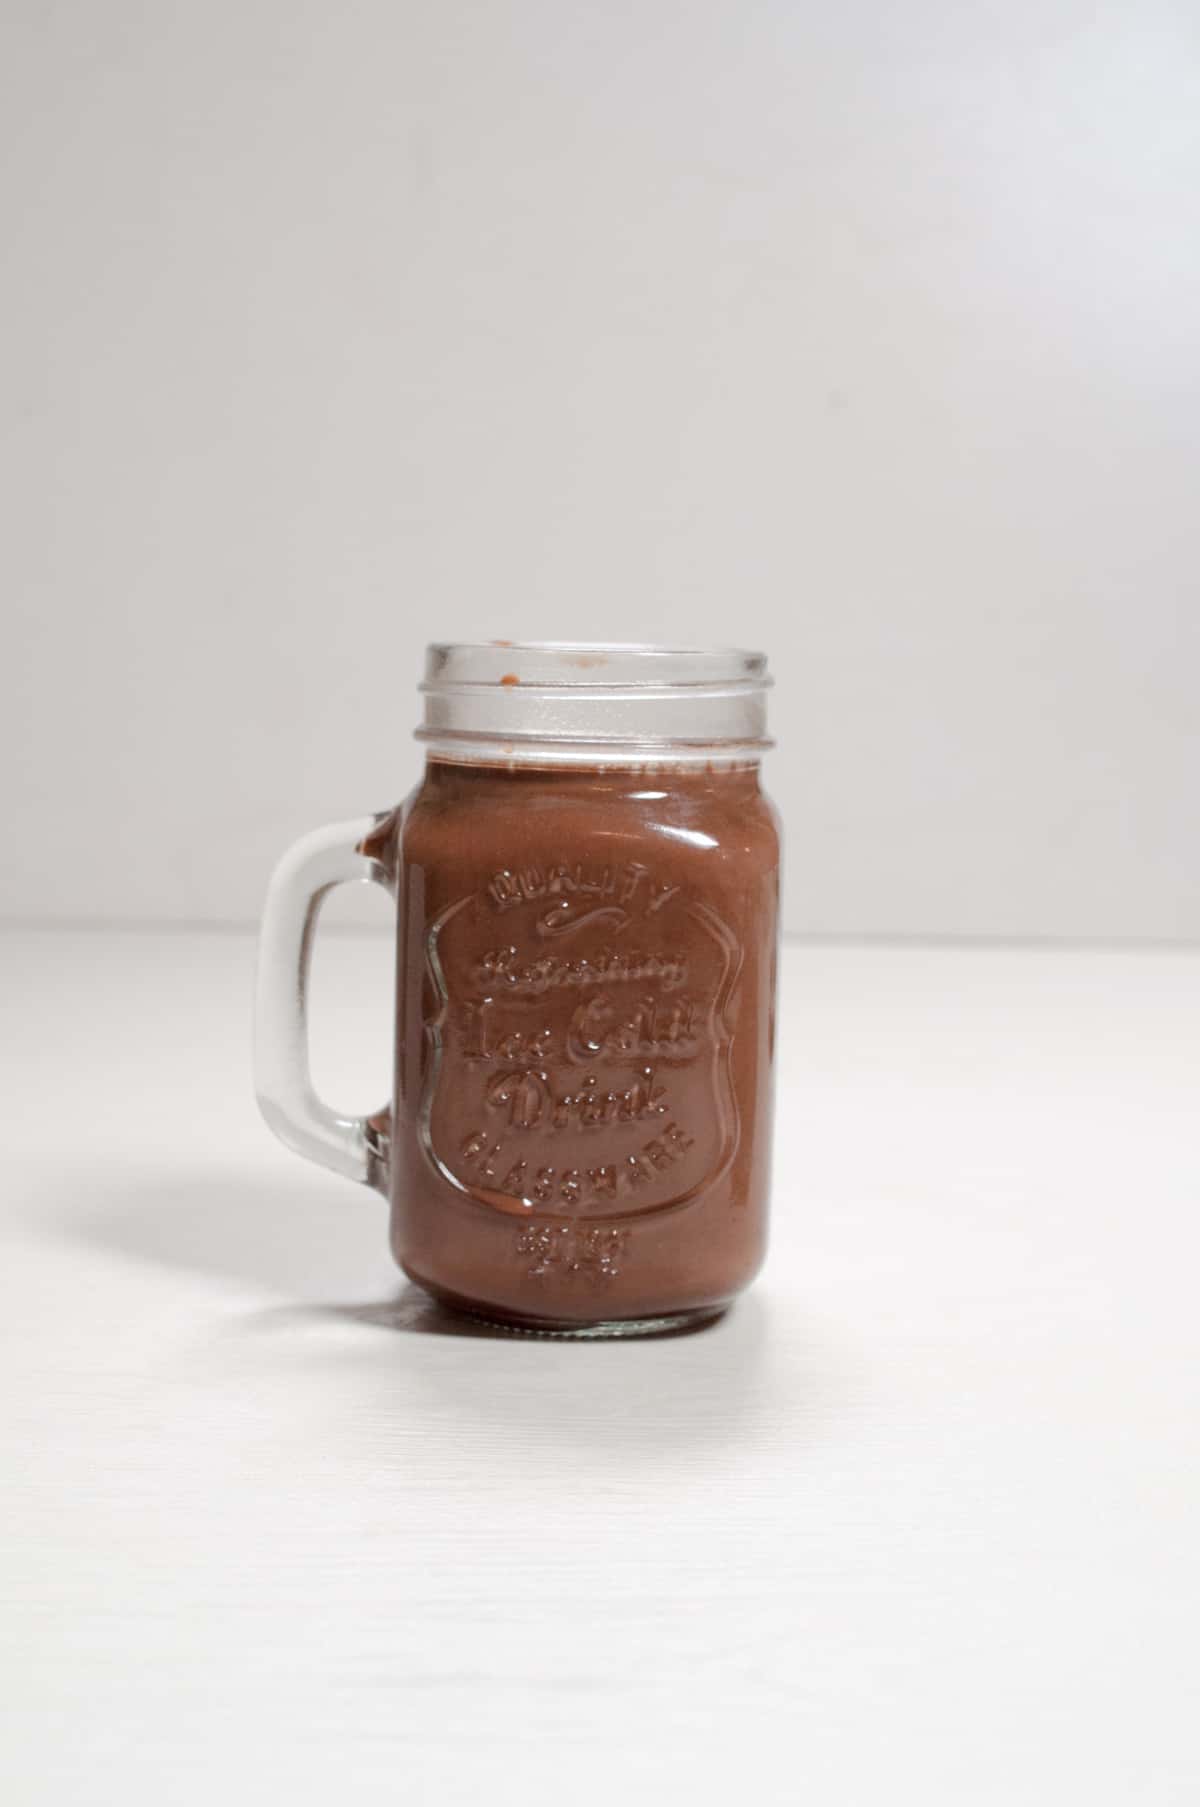 iced chocolate tea in a jar.